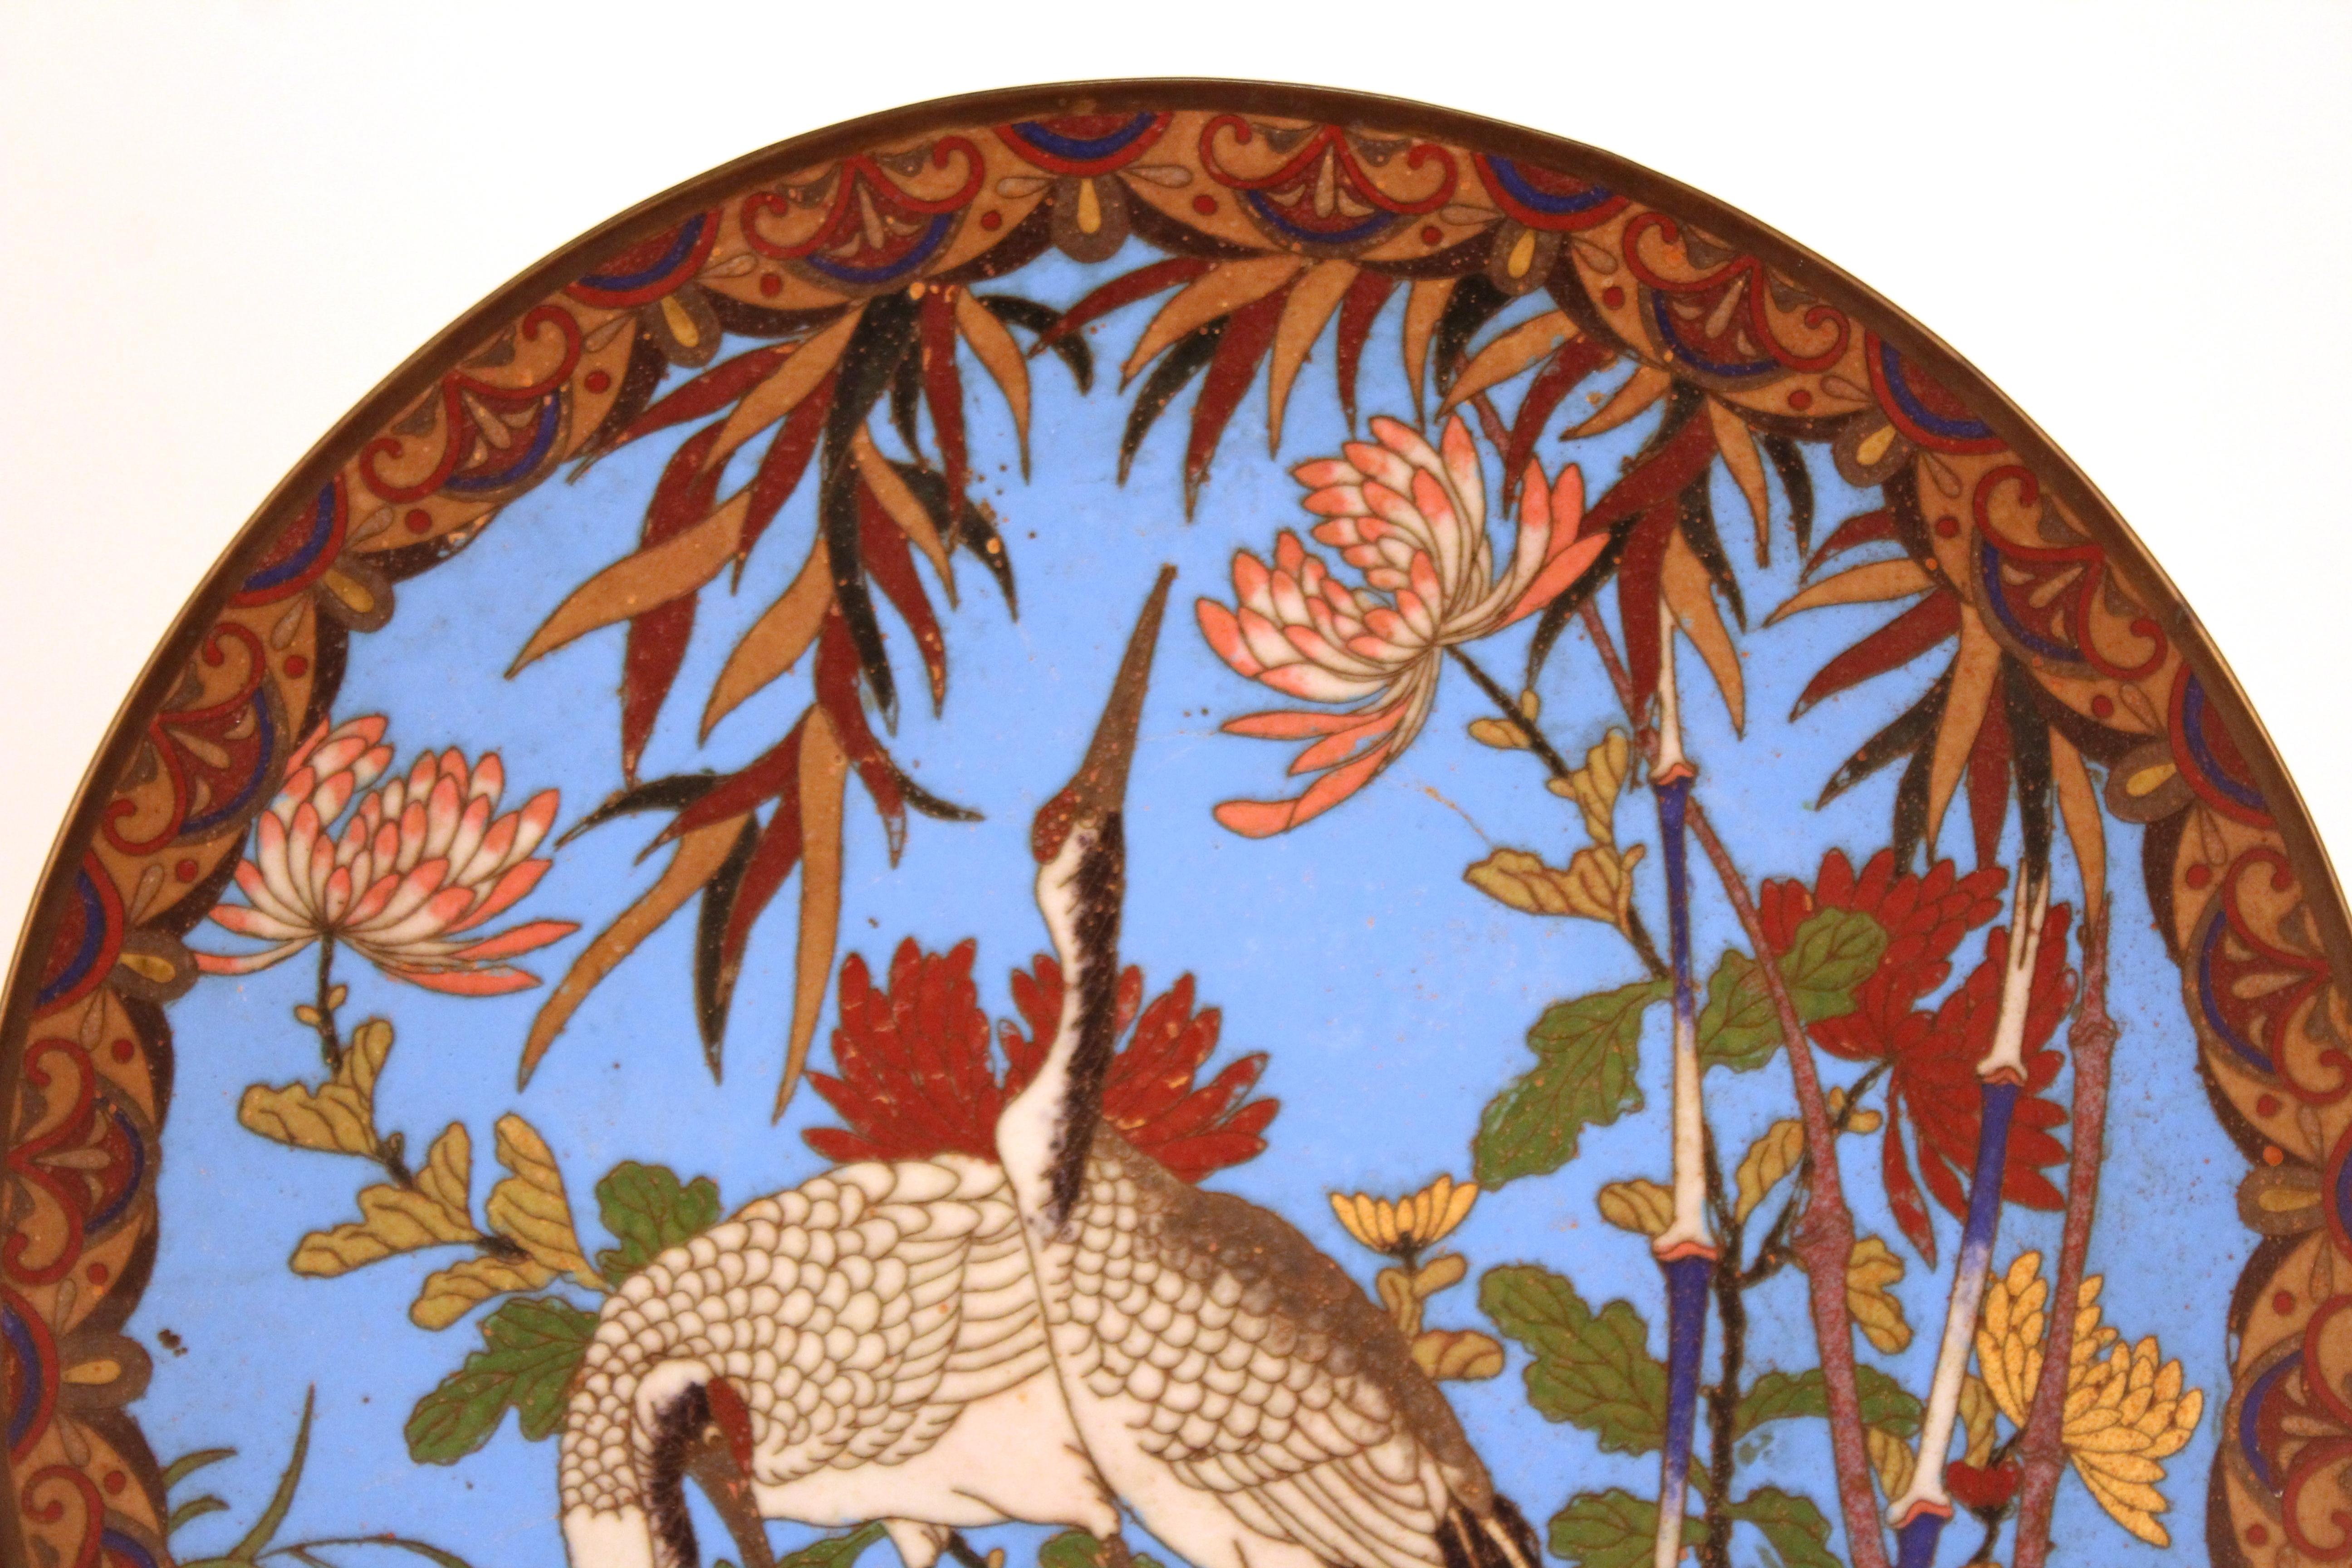 Assiette japonaise de la période Meiji en émail cloisonné coloré, représentant deux grues et un motif de chrysanthème sur la bordure. La pièce a un dos émaillé bleu et a été fabriquée vers 1900. En excellent état antique avec une usure et une